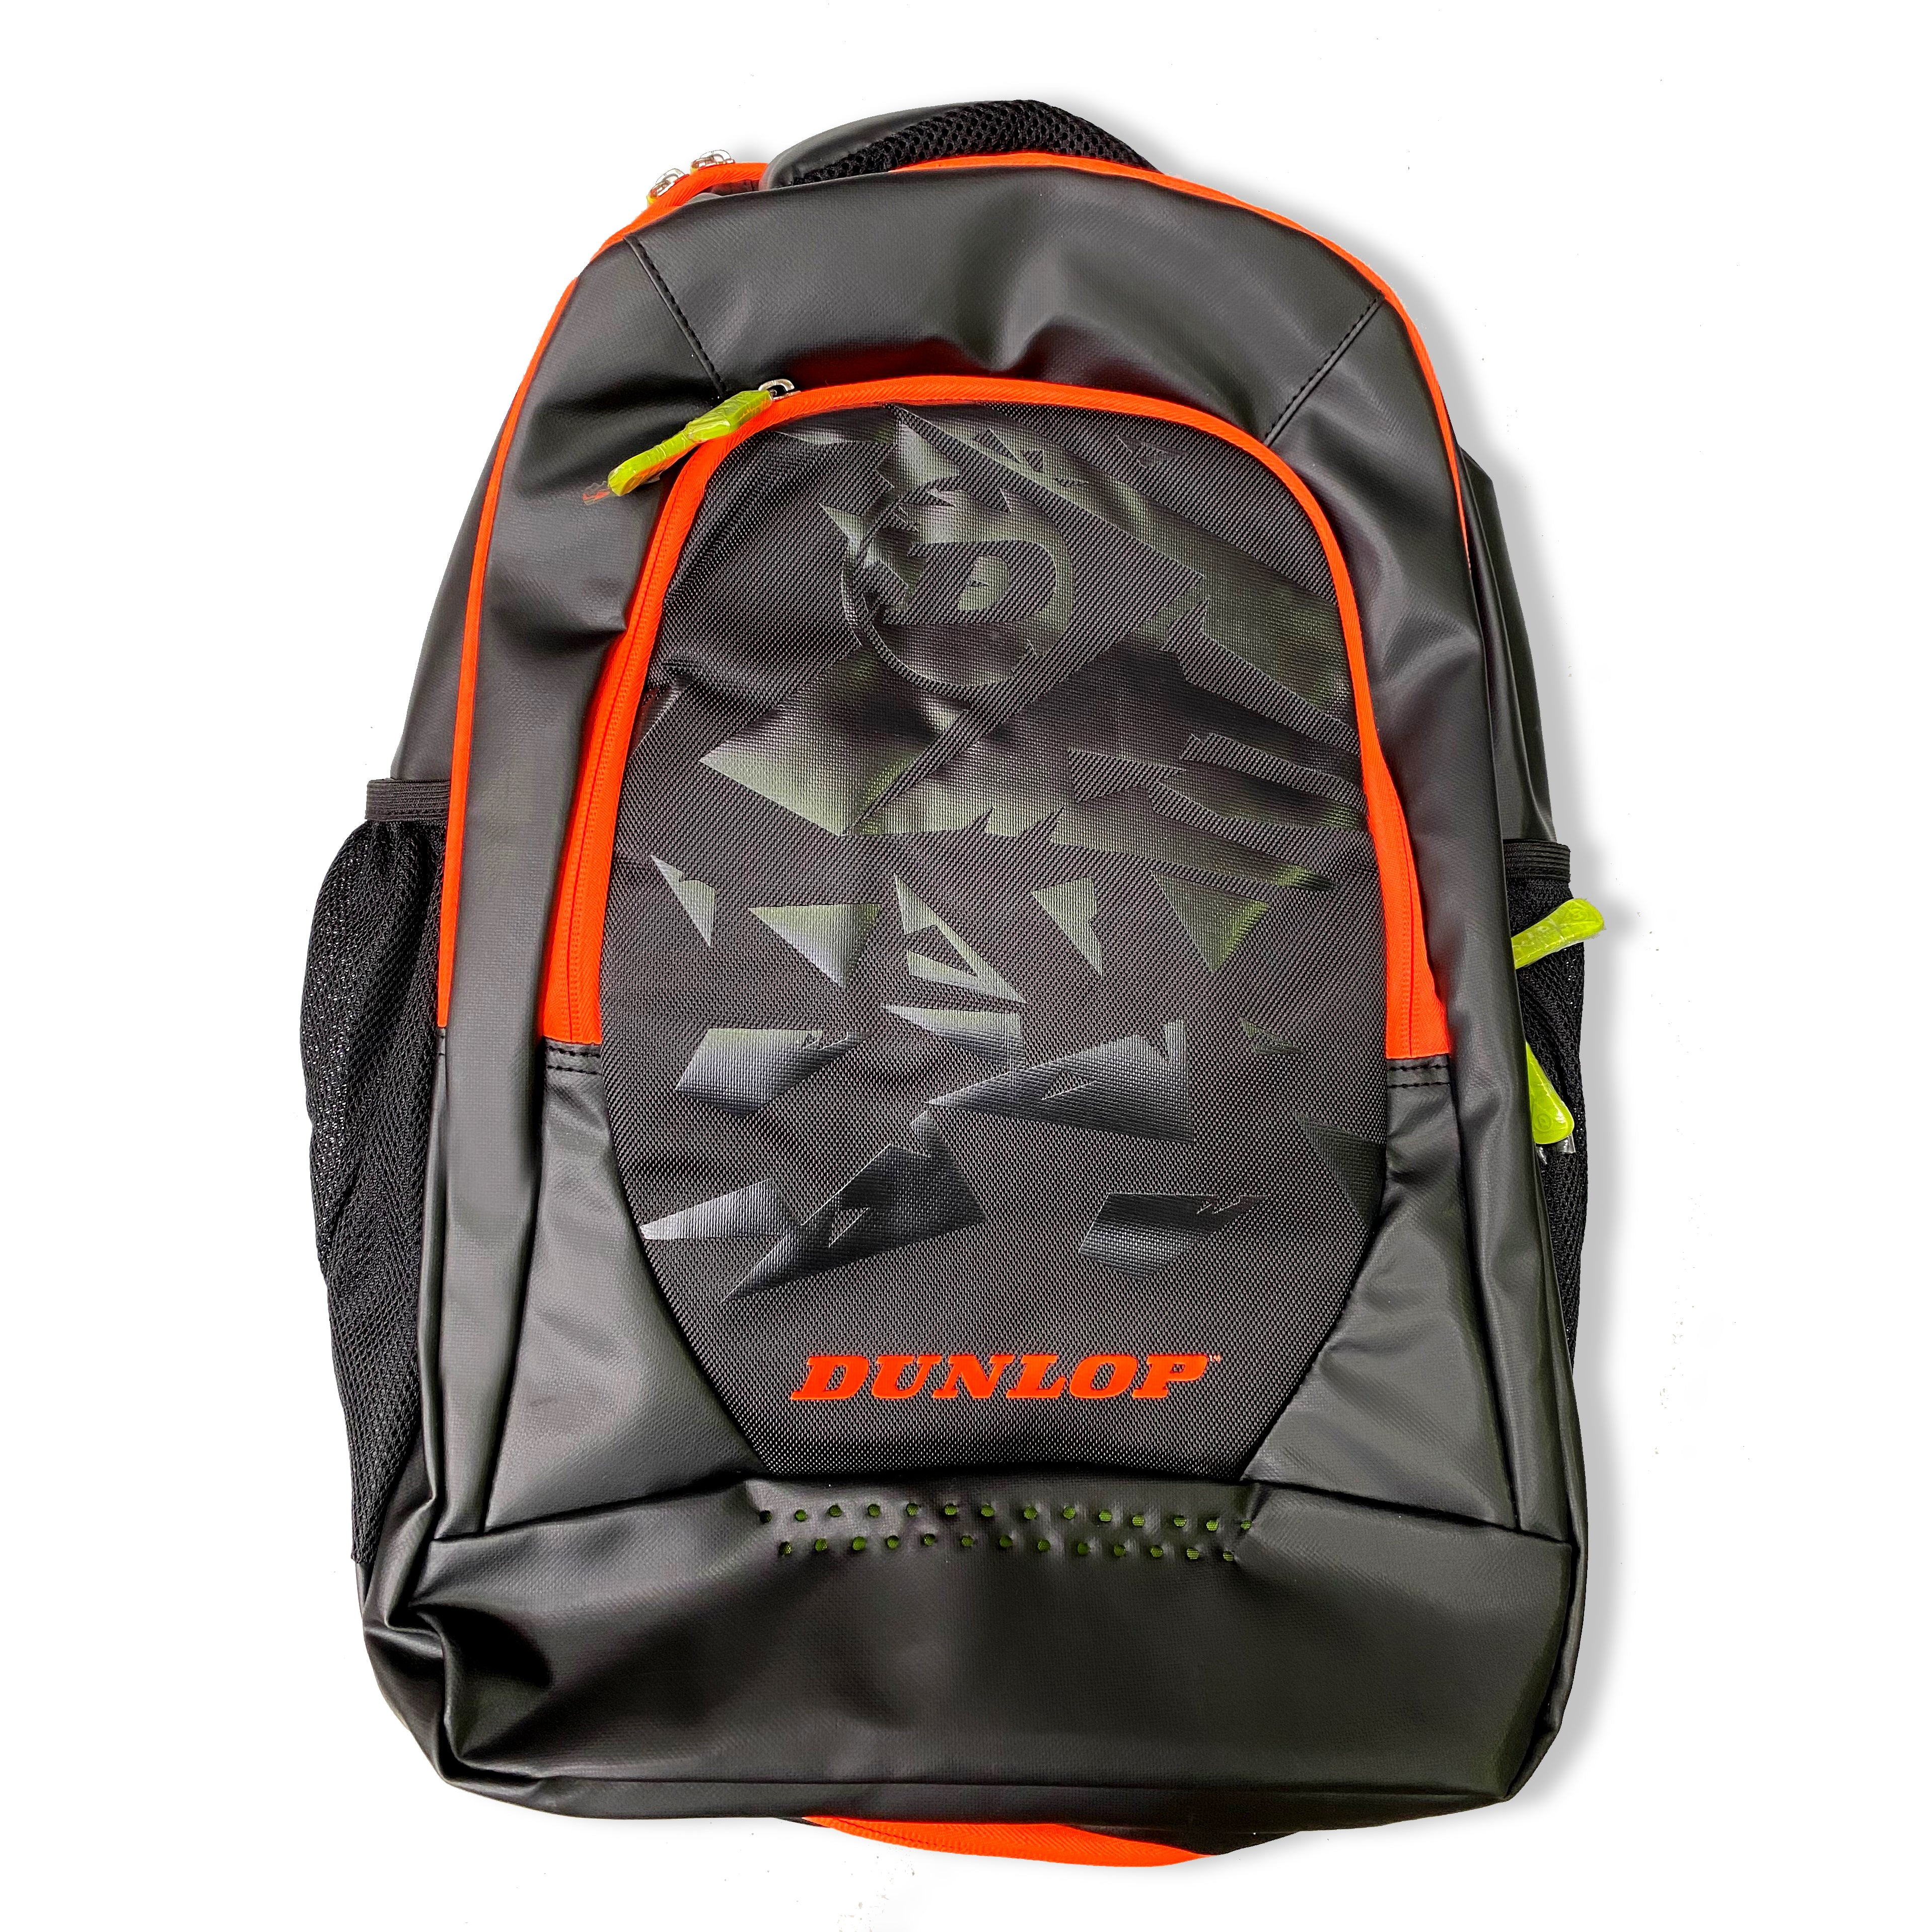 Dunlop Elite Backpack in Black & Copper